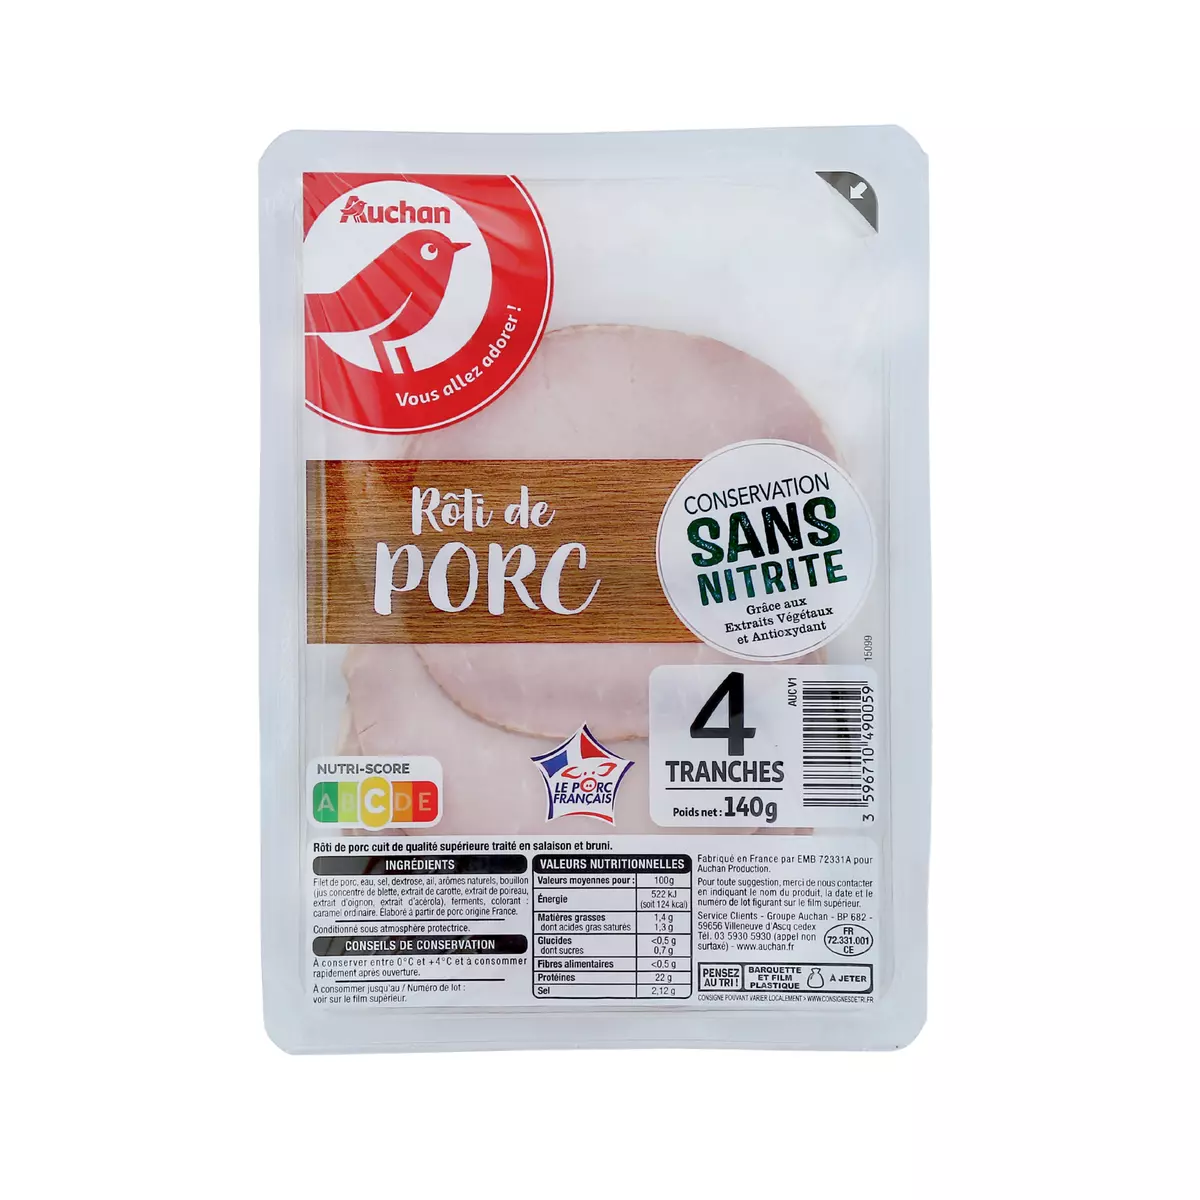 AUCHAN Roti de porc conservation sans nitrite 4 tranches 140g